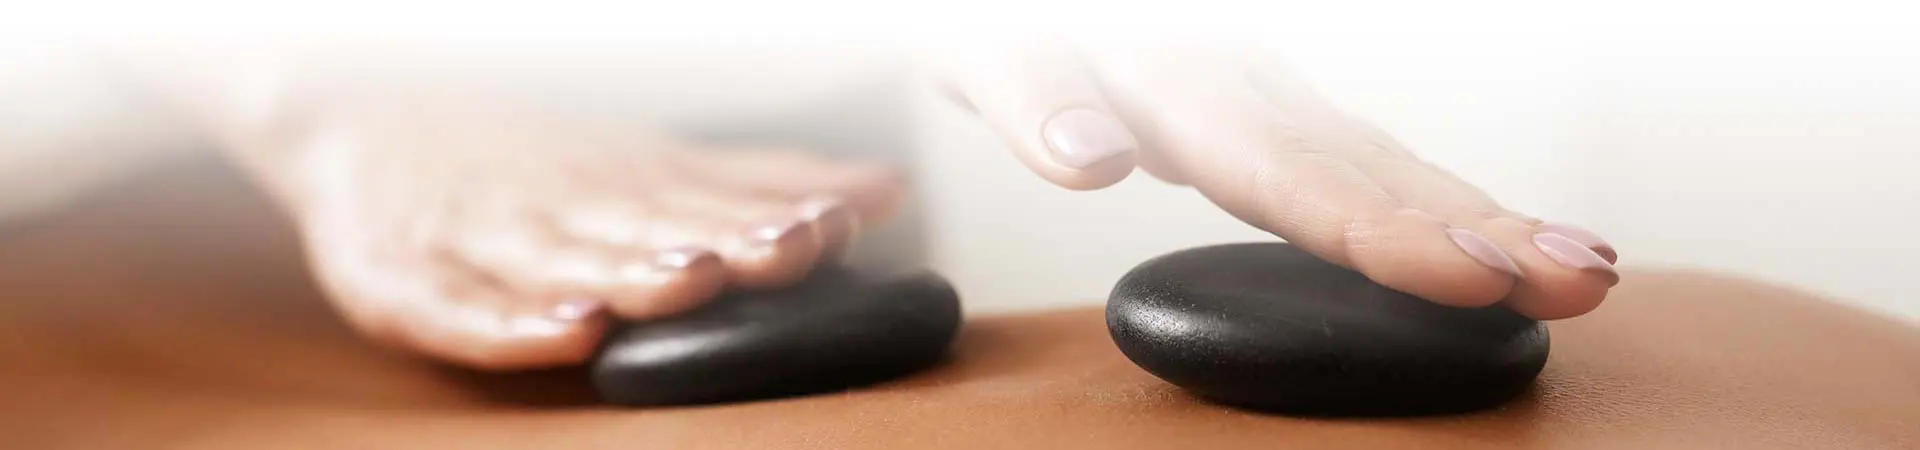 Hot Stone Massage - Massage mit heißen, dunklen Steinen